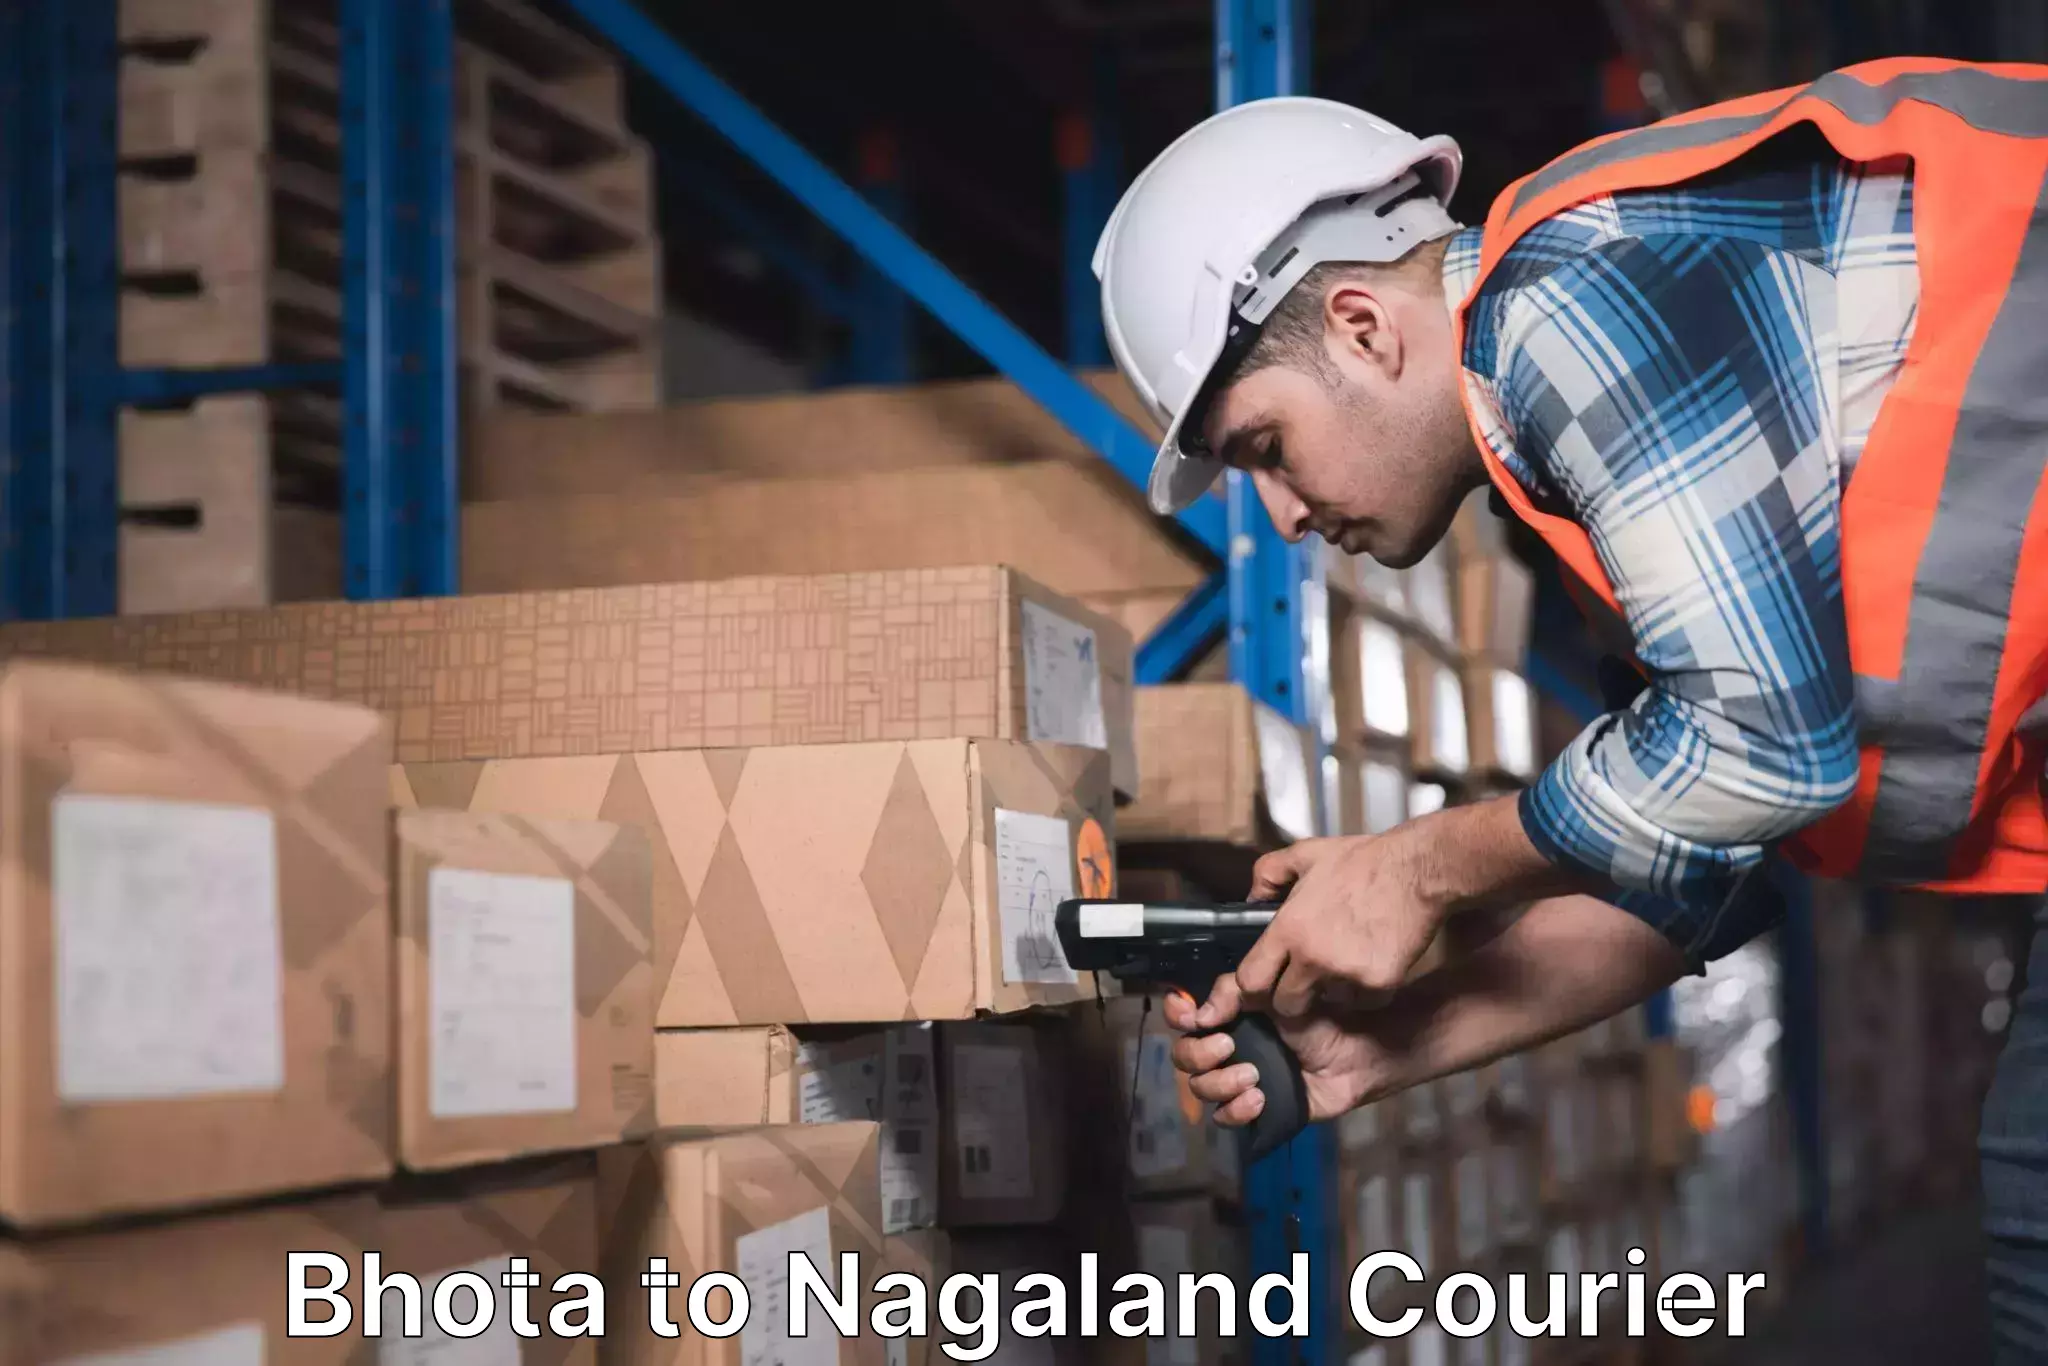 Courier app Bhota to Nagaland